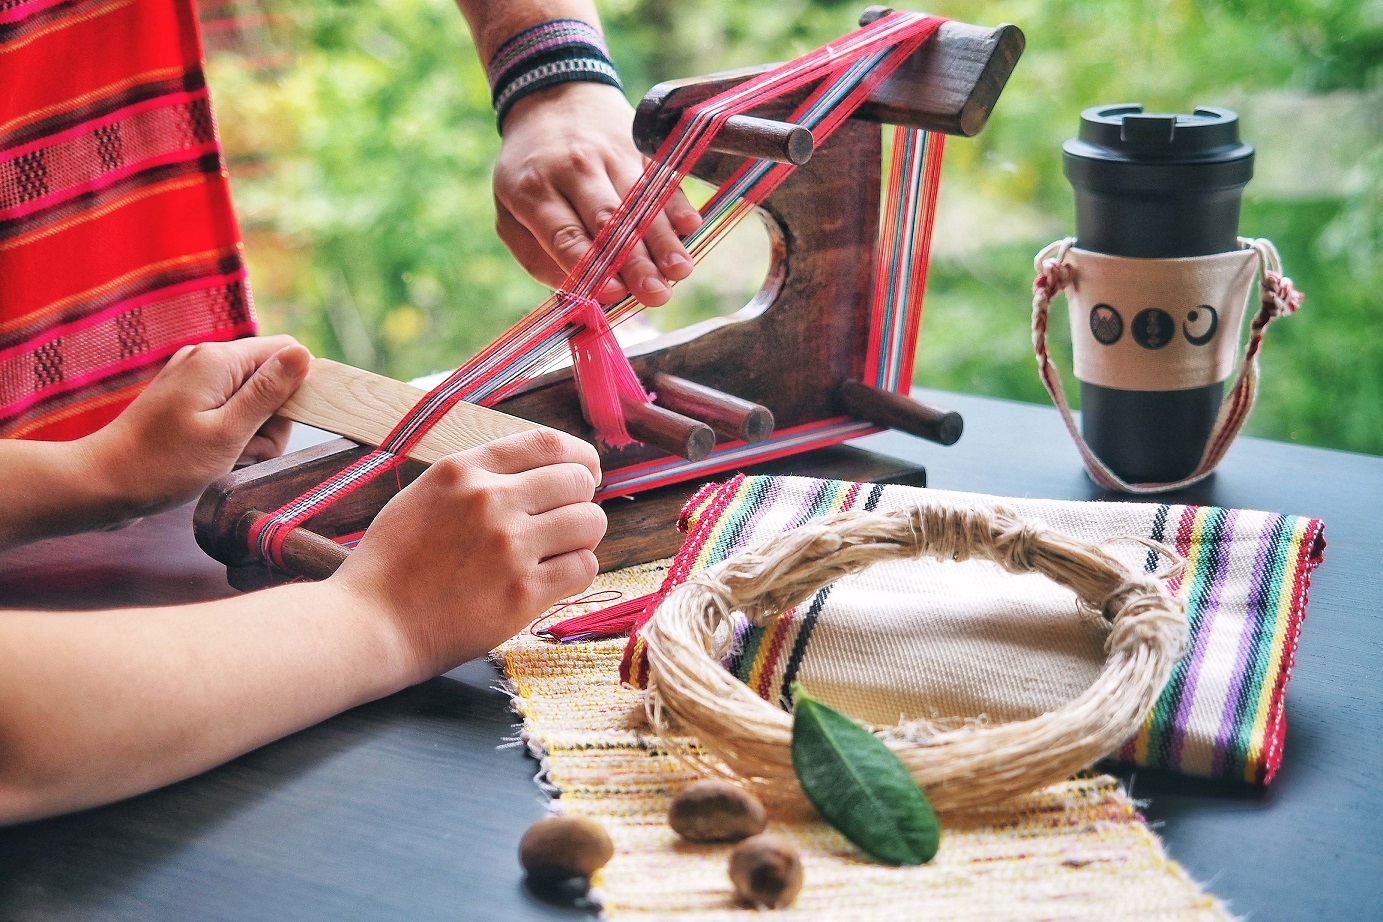 星のやグーグァン　～織物技術に精通する台湾原住民族に学ぶ文化体験アクティビティ～台湾原住民族の文化体験「紡ぐタイヤル族の織物」を提供開始　開始日：2020年9月4日